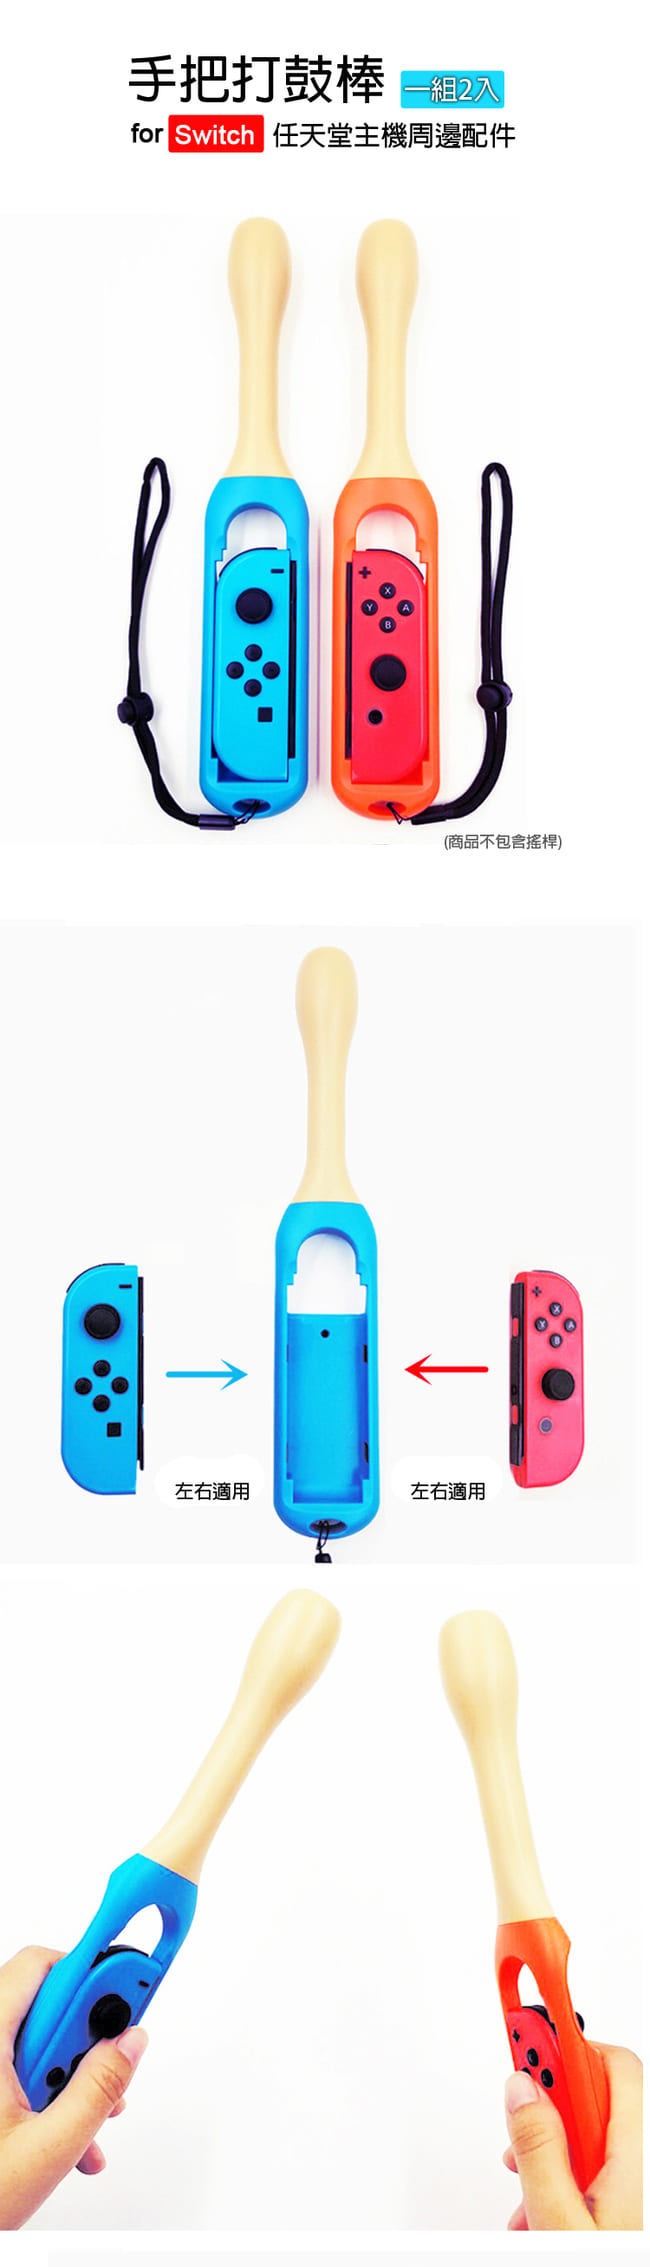 Nintendo任天堂Switch專用 Joy-Con手把打鼓棒 (紅/藍)